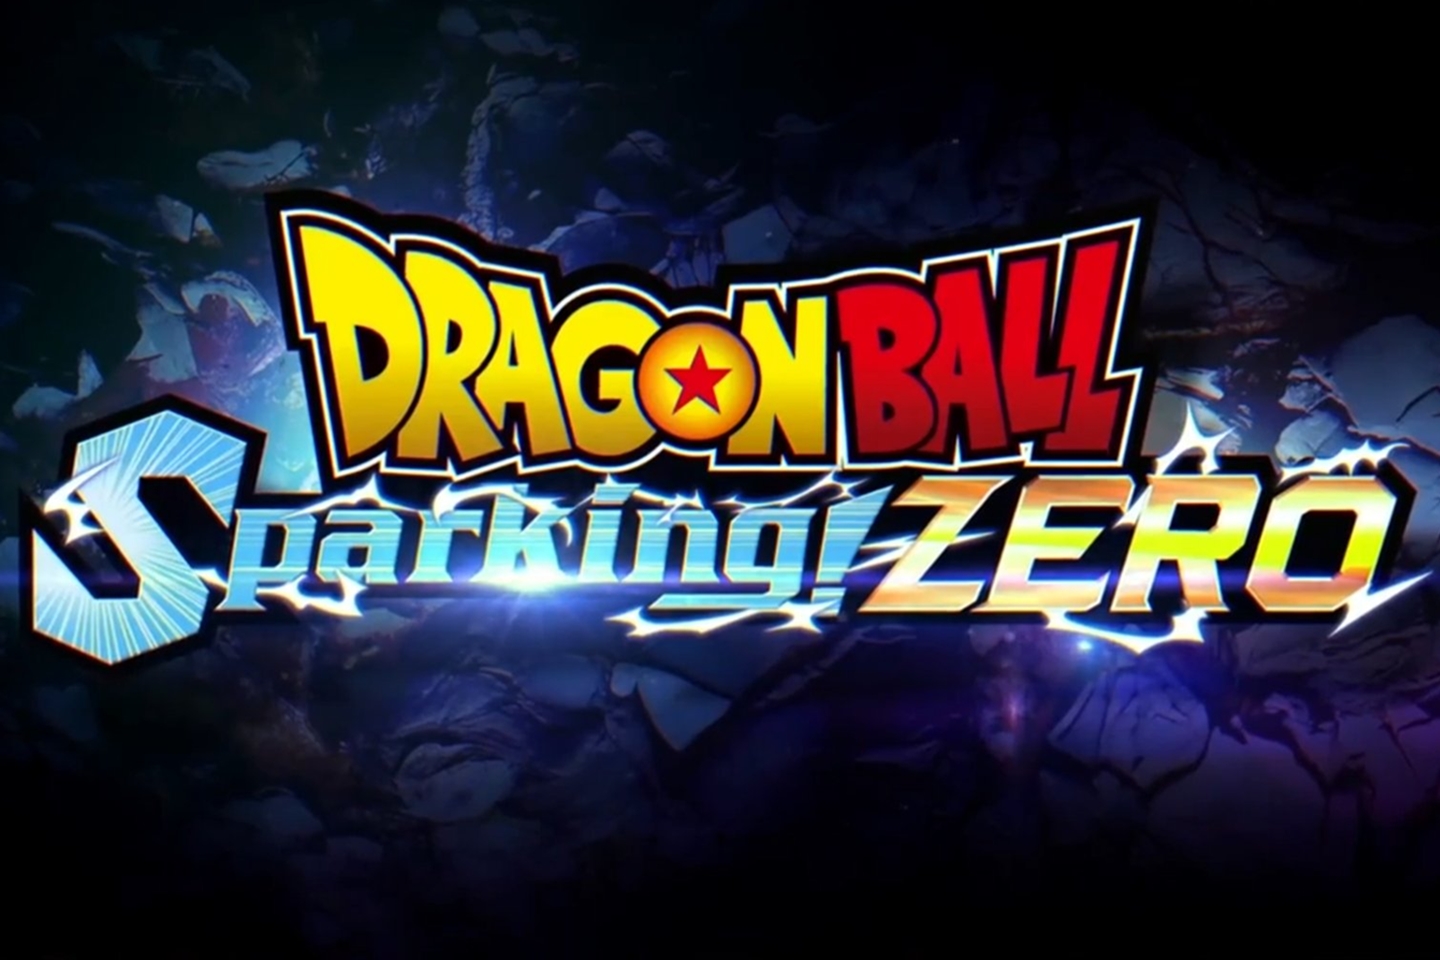 Tenkaichi 4 chegando! Dragon Ball Sparking Zero ganha trailer no TGA